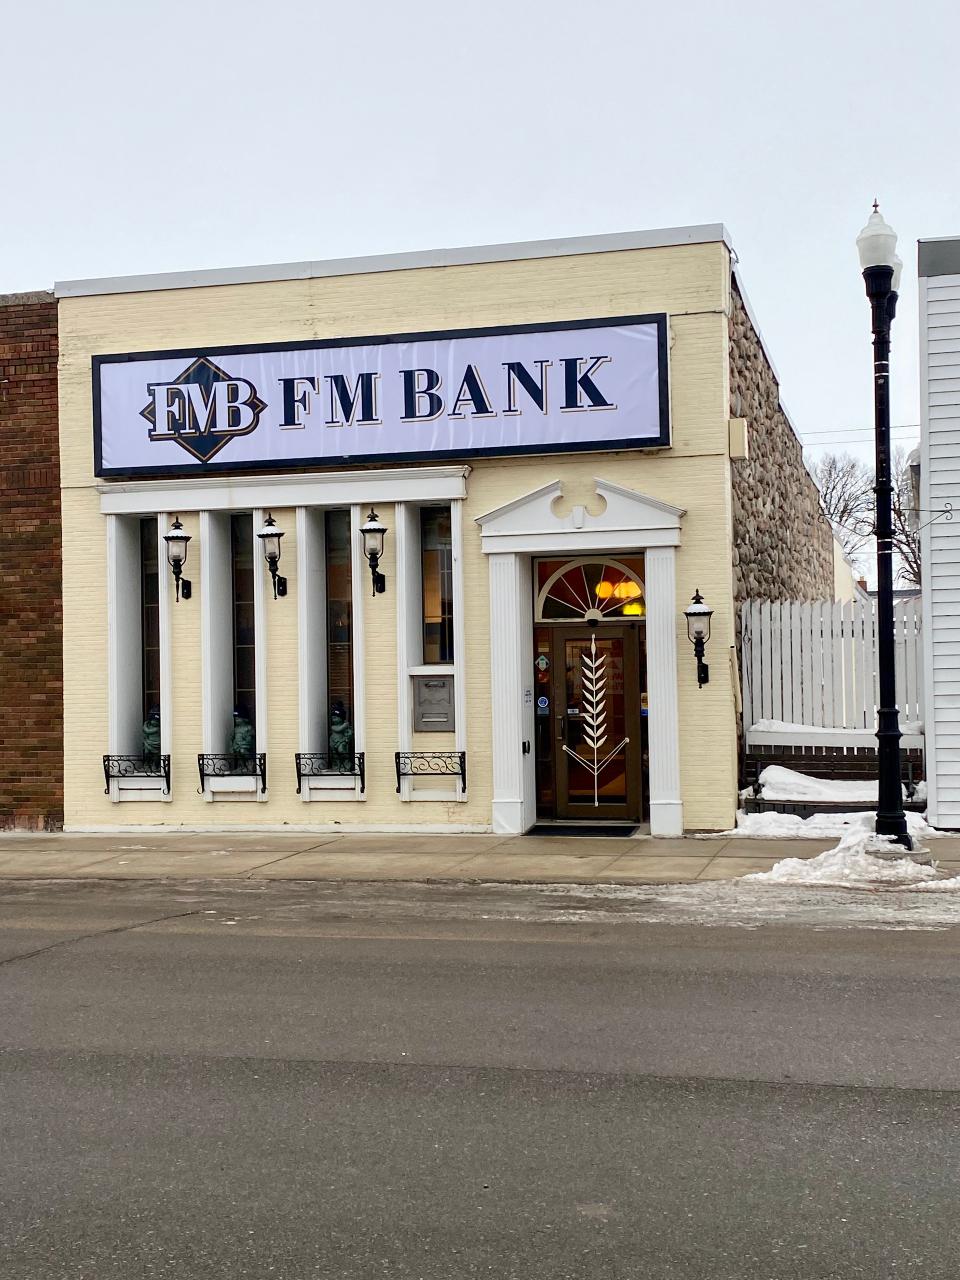 FM BANK, Wheaton, MN